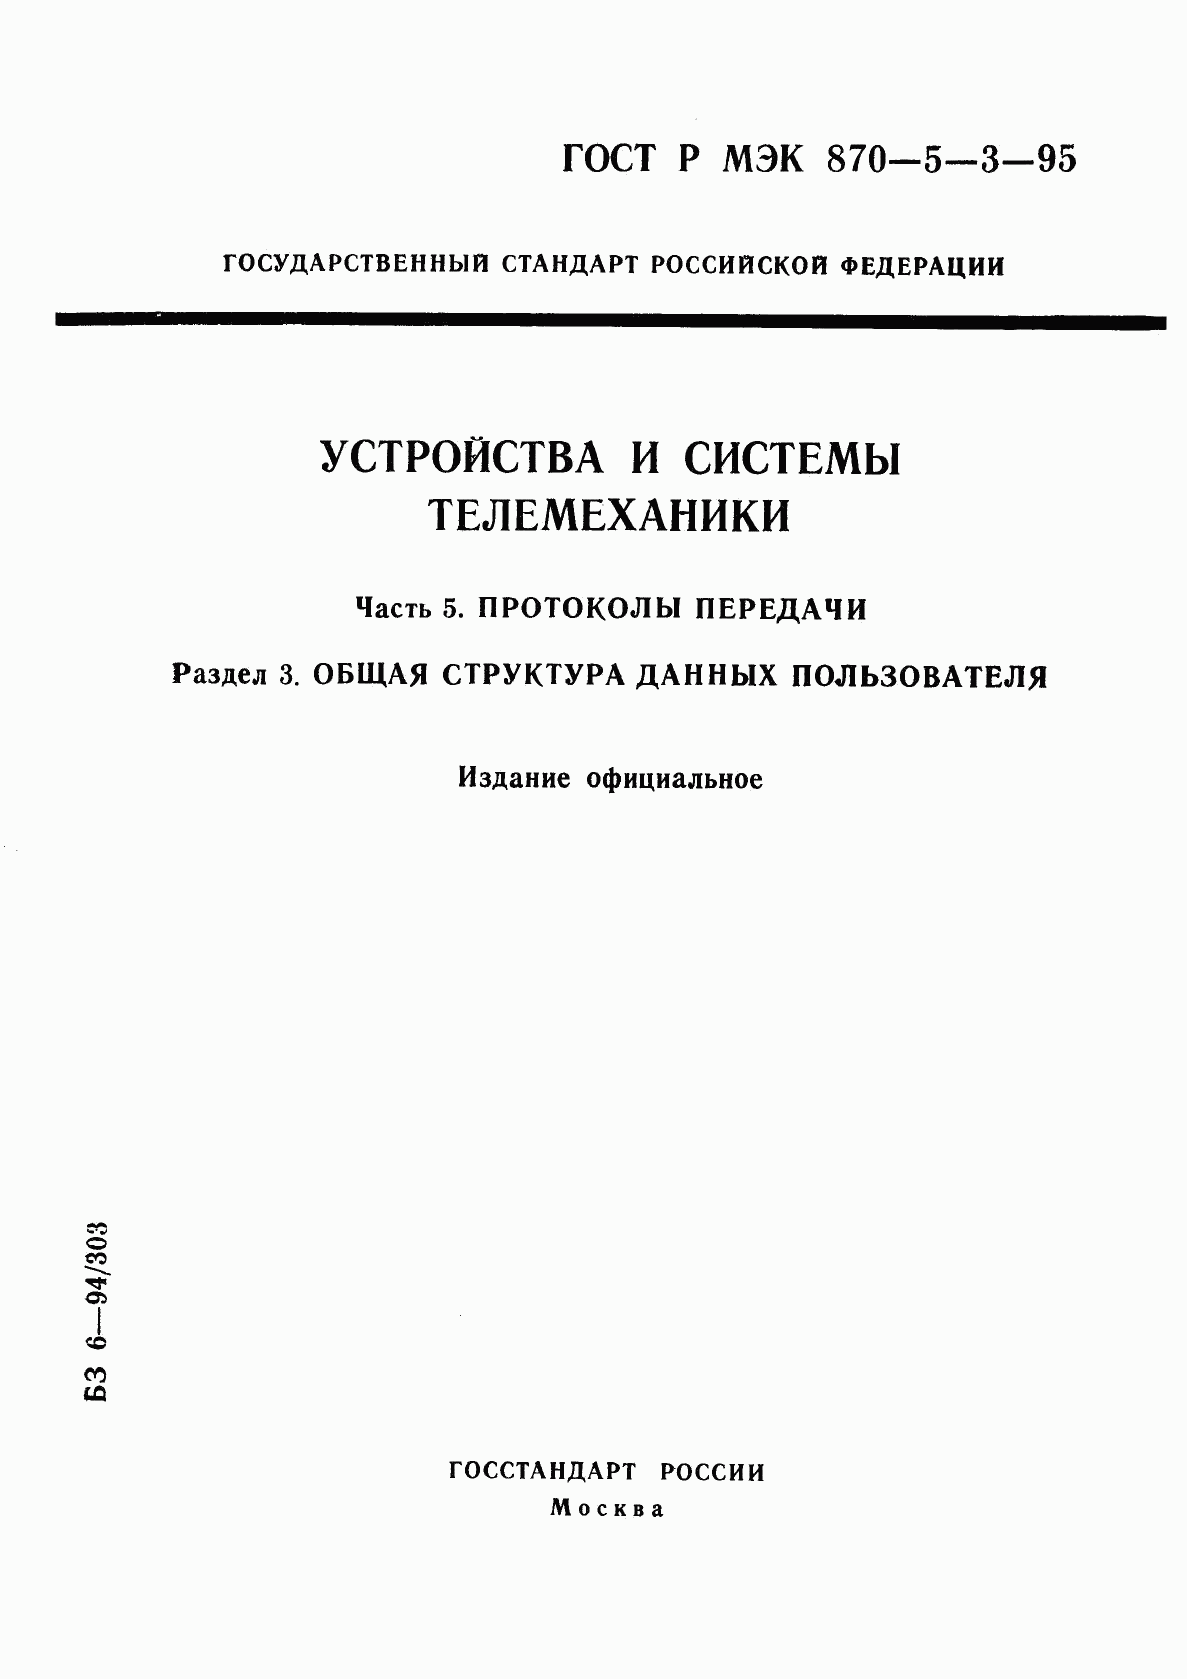 ГОСТ Р МЭК 870-5-3-95, страница 1